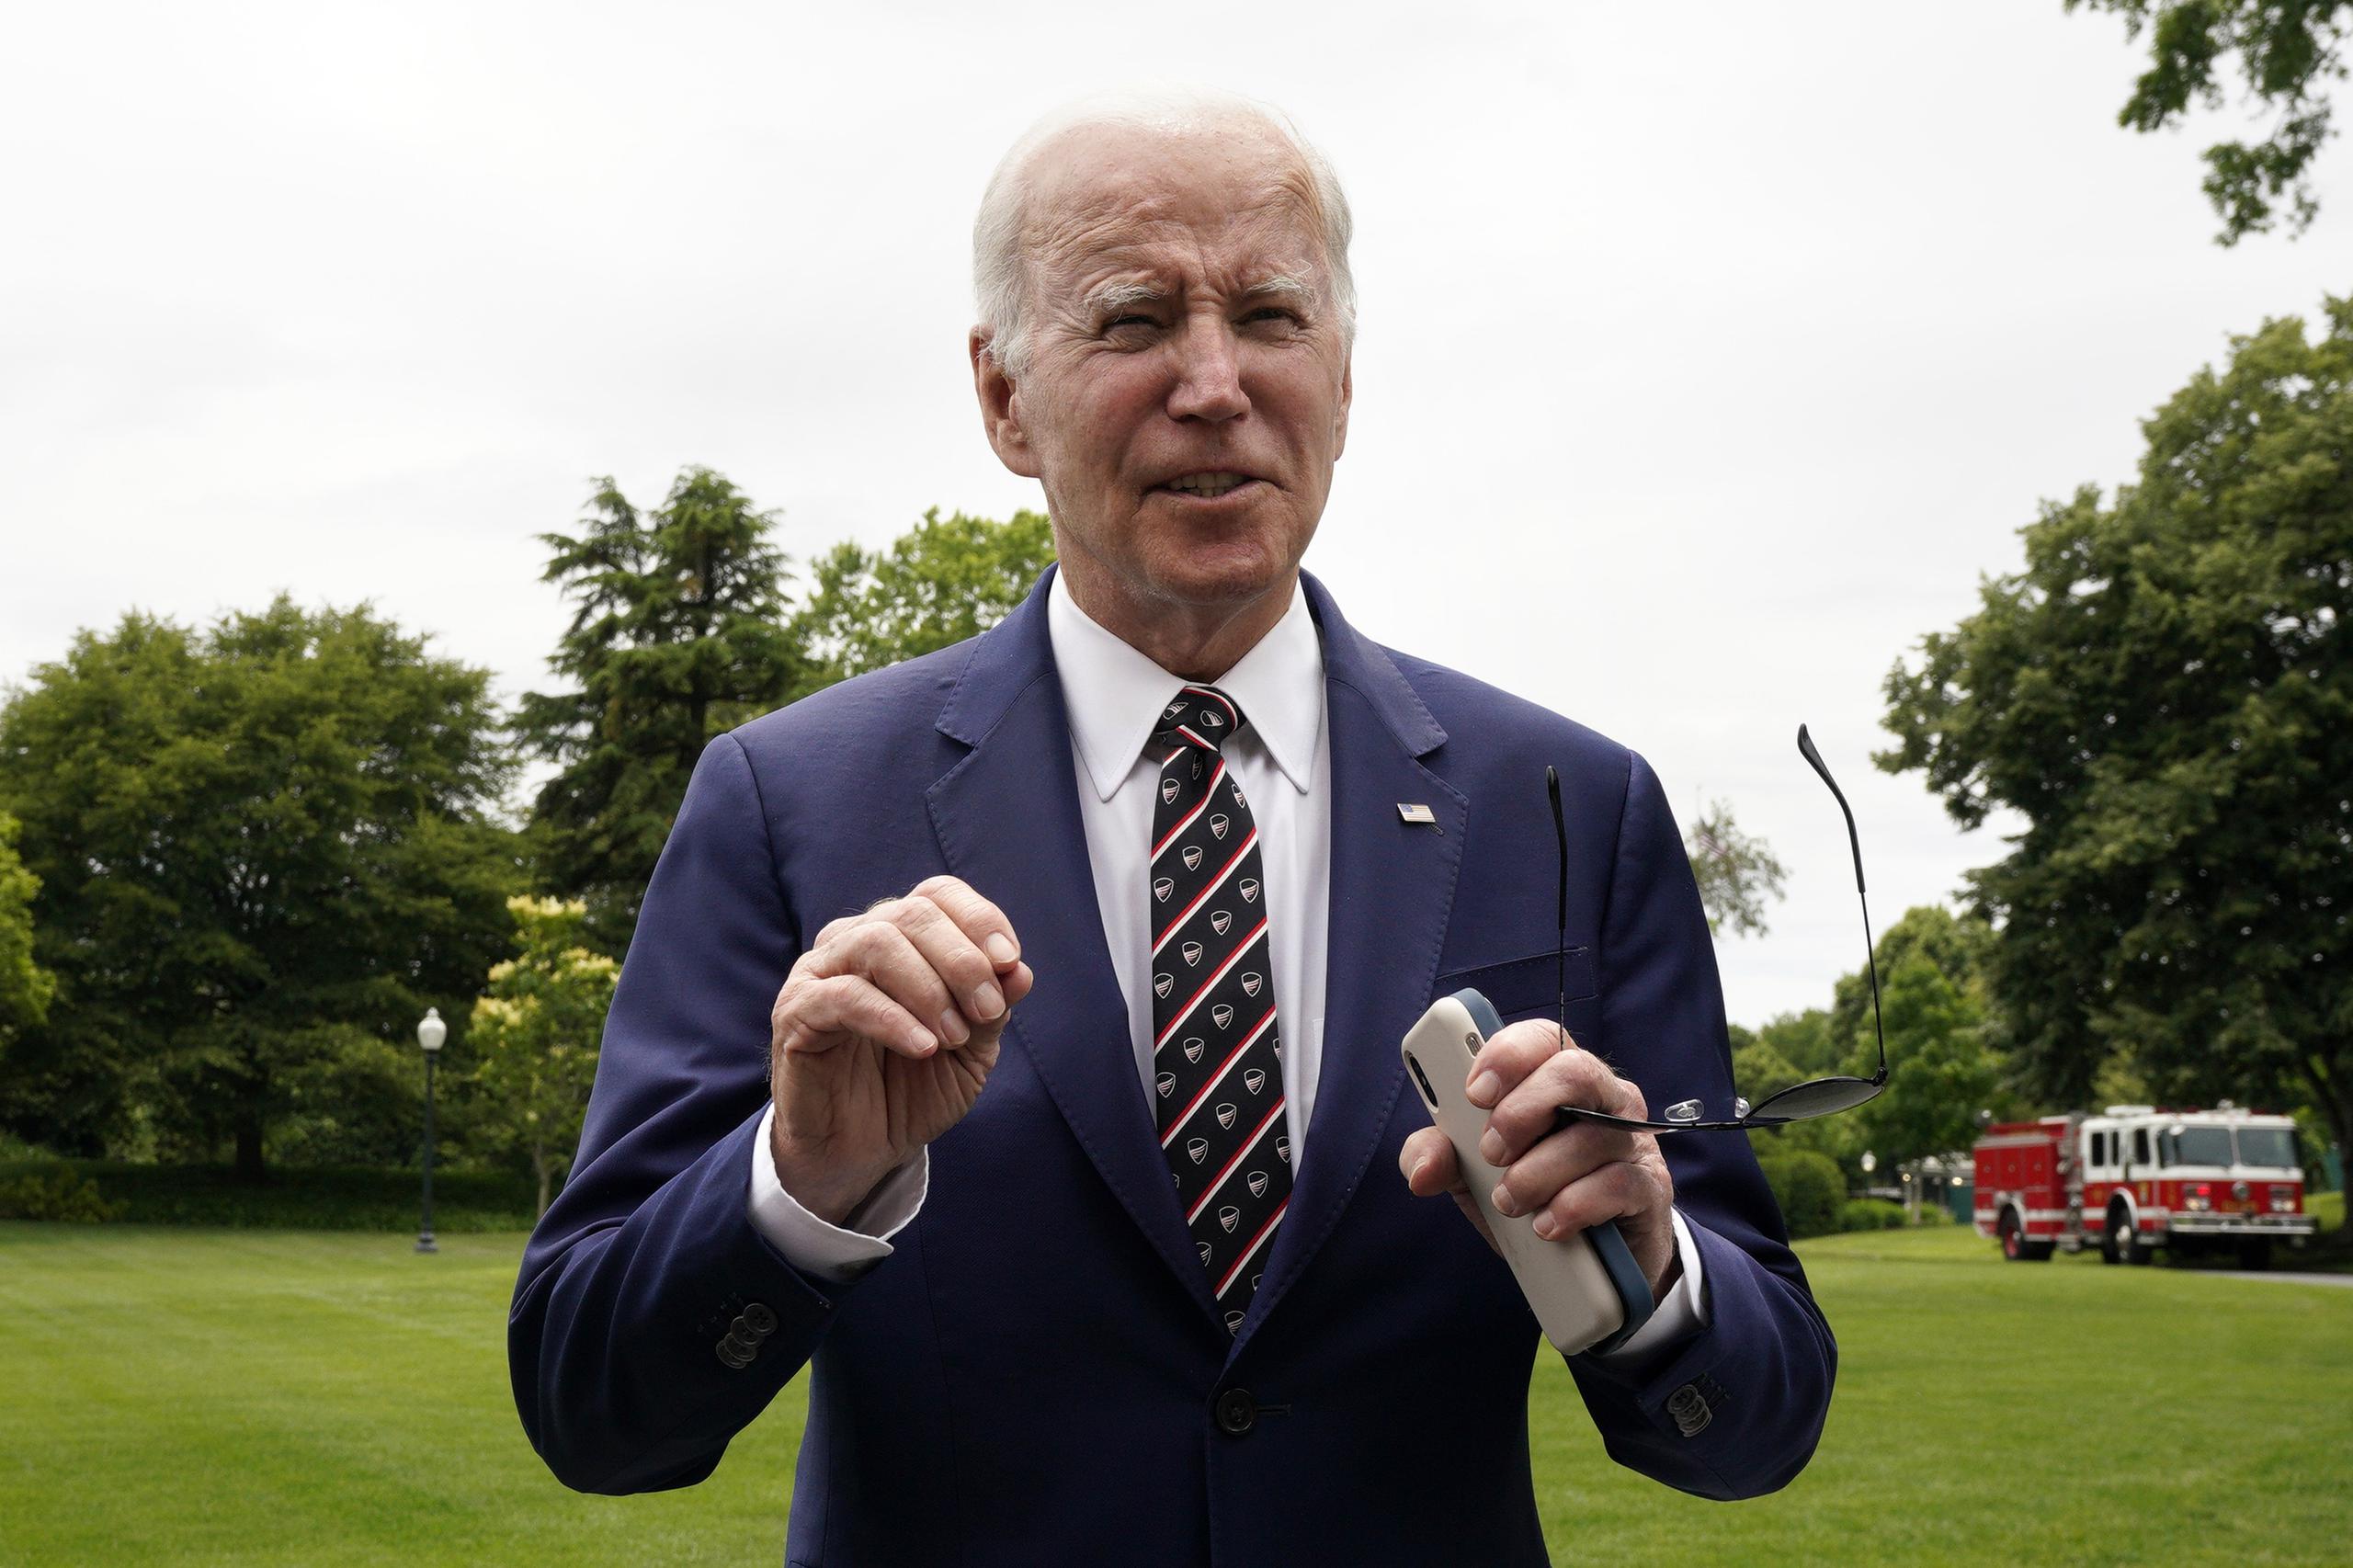 El presidente estadounidense Joe Biden afirmó que cree que los republicanos han negociado “en buena fe” y que está convencido de que McCarthy cuenta con los apoyos suficientes de su partido para aprobar la ley.